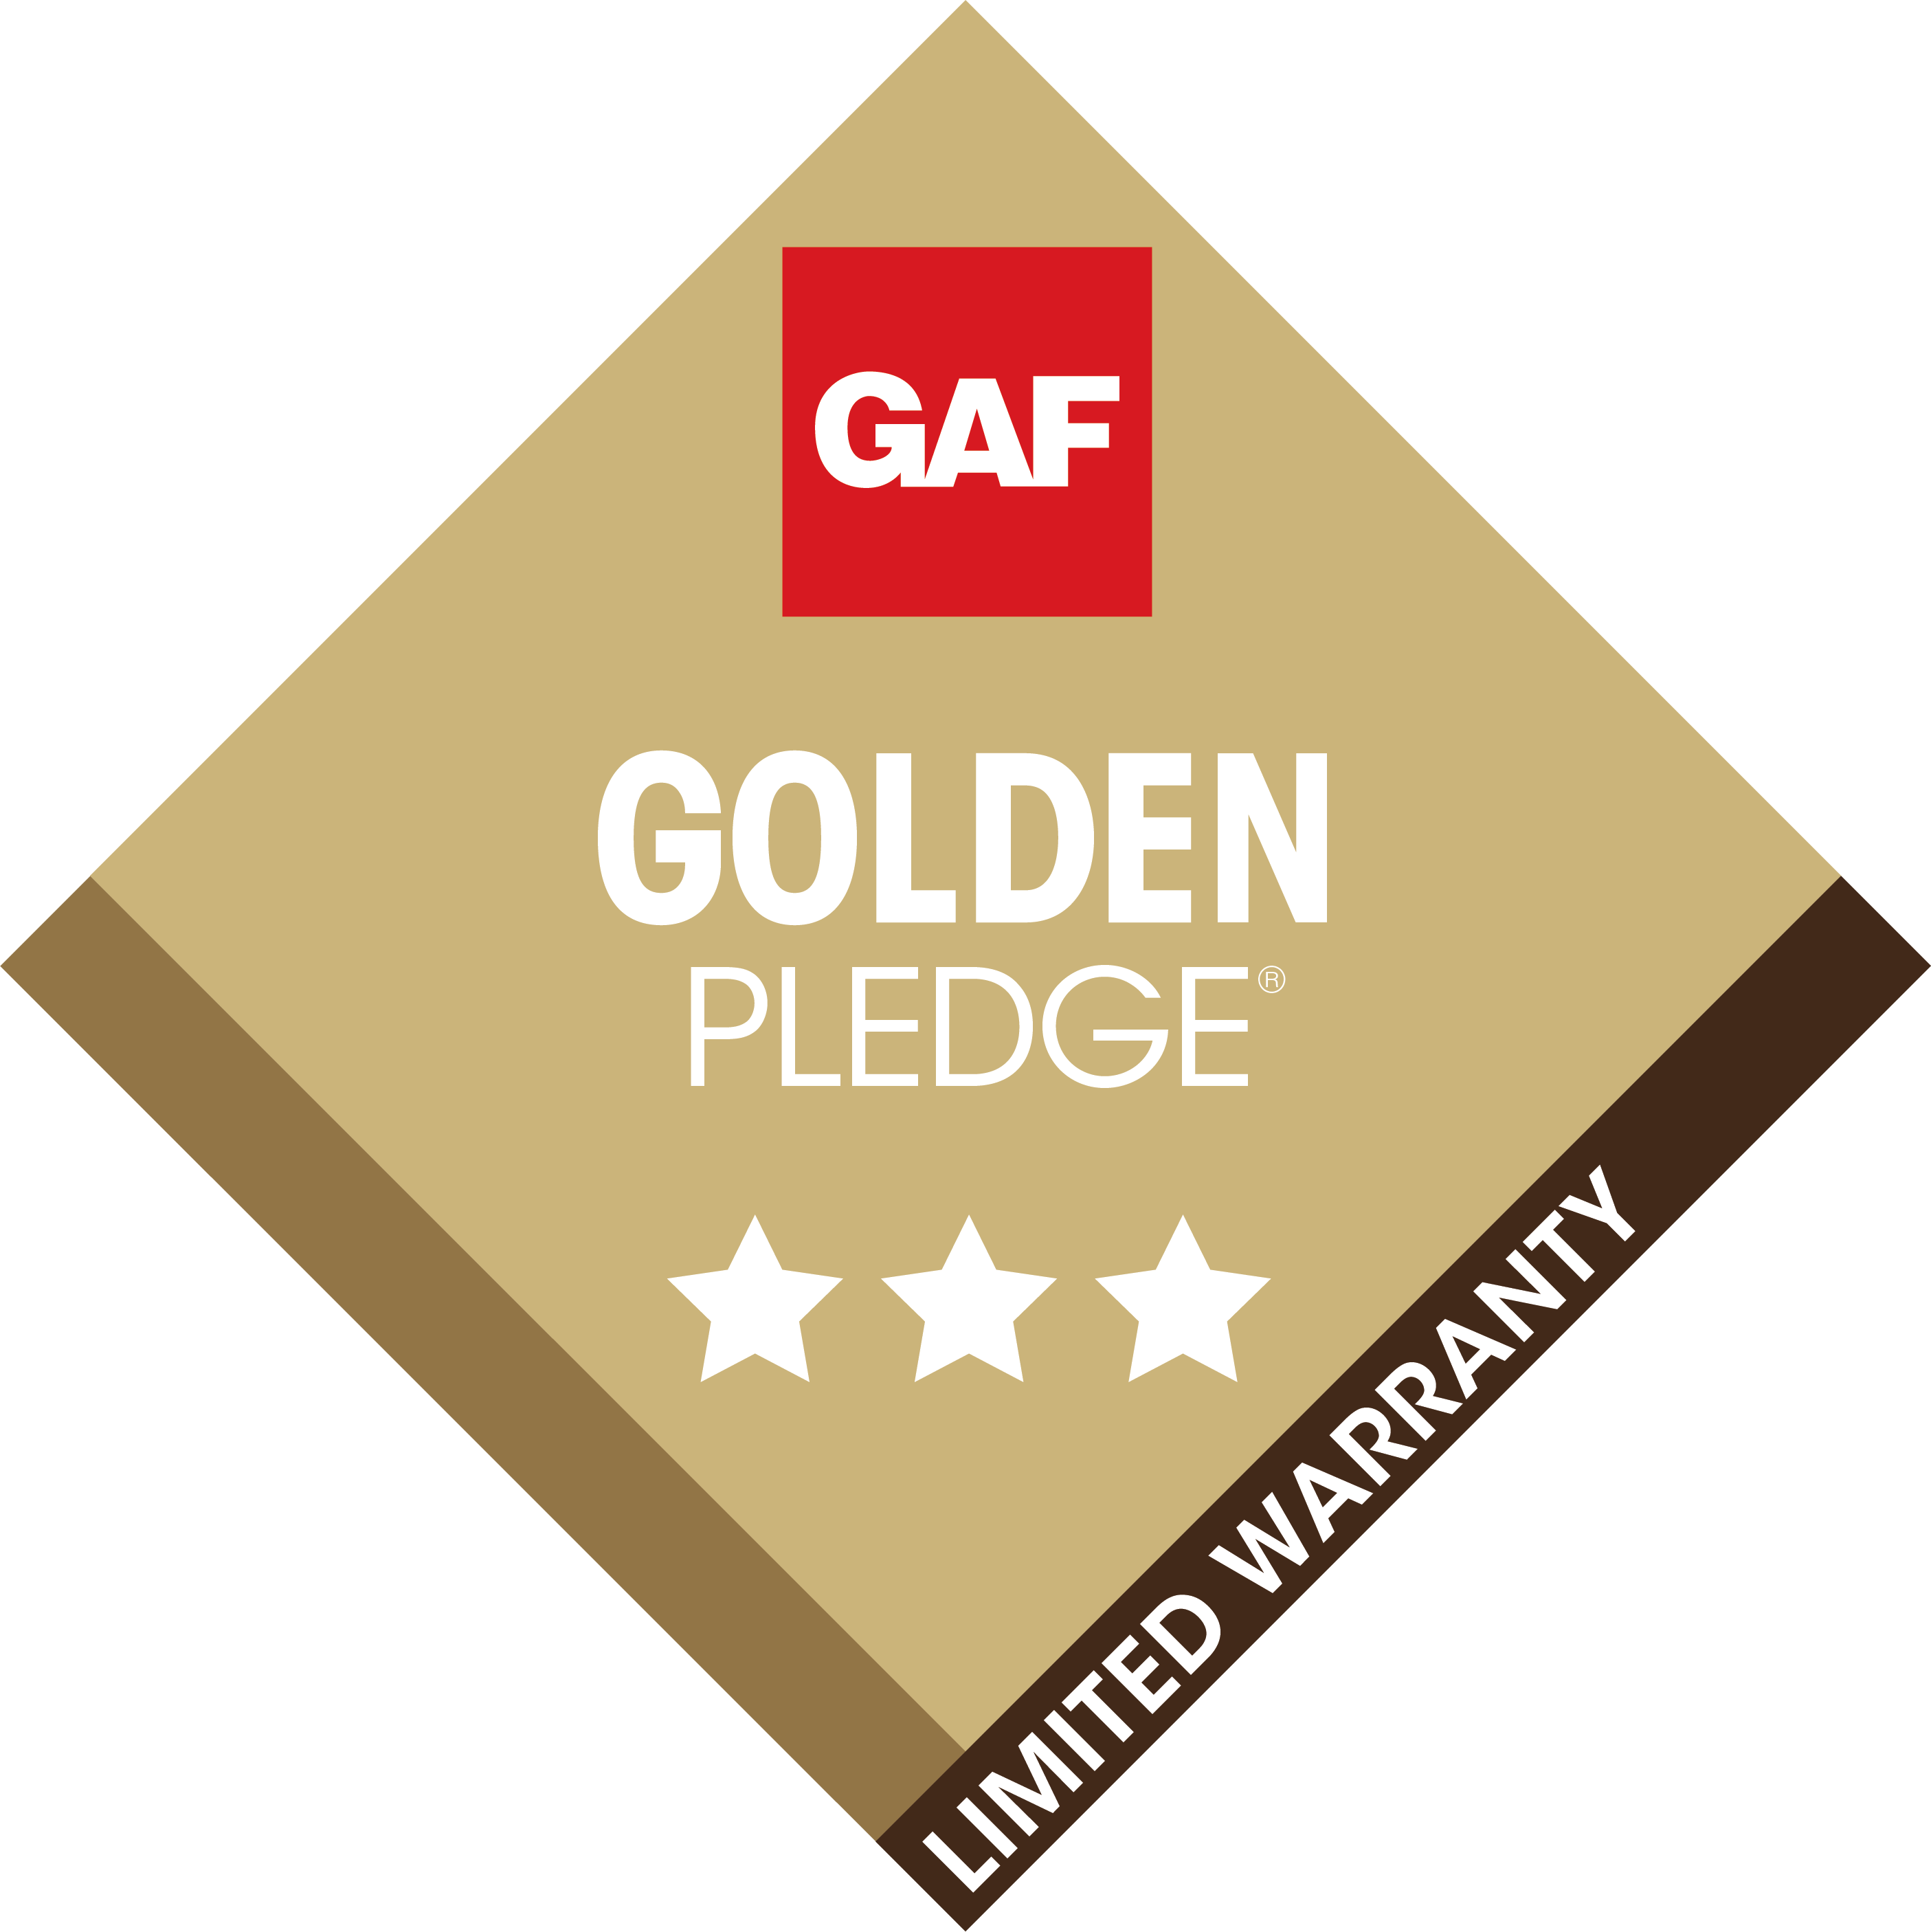 GAF golden pledge roofing contractor rapid city